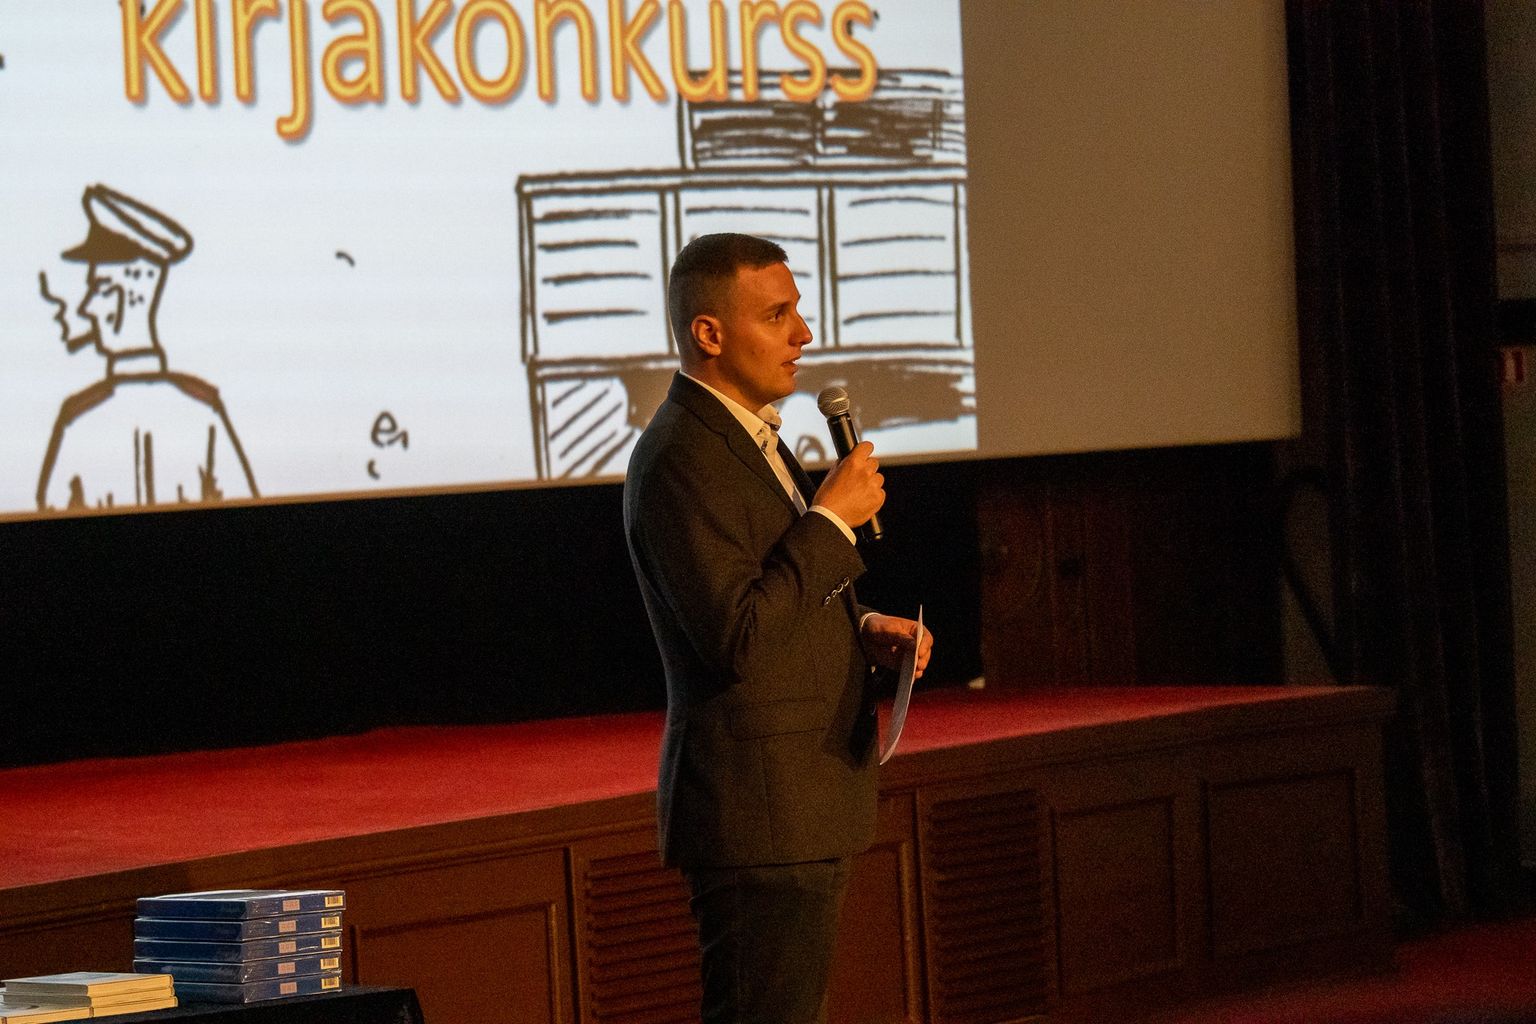 Eesti Mälu Instituudi juhatuse liige Sergei Metlev 4. juunil 2021 Tallinnas Sõpruse kinos kirjakonkursi "Kiri küüditatule" auhinnatseremoonial.